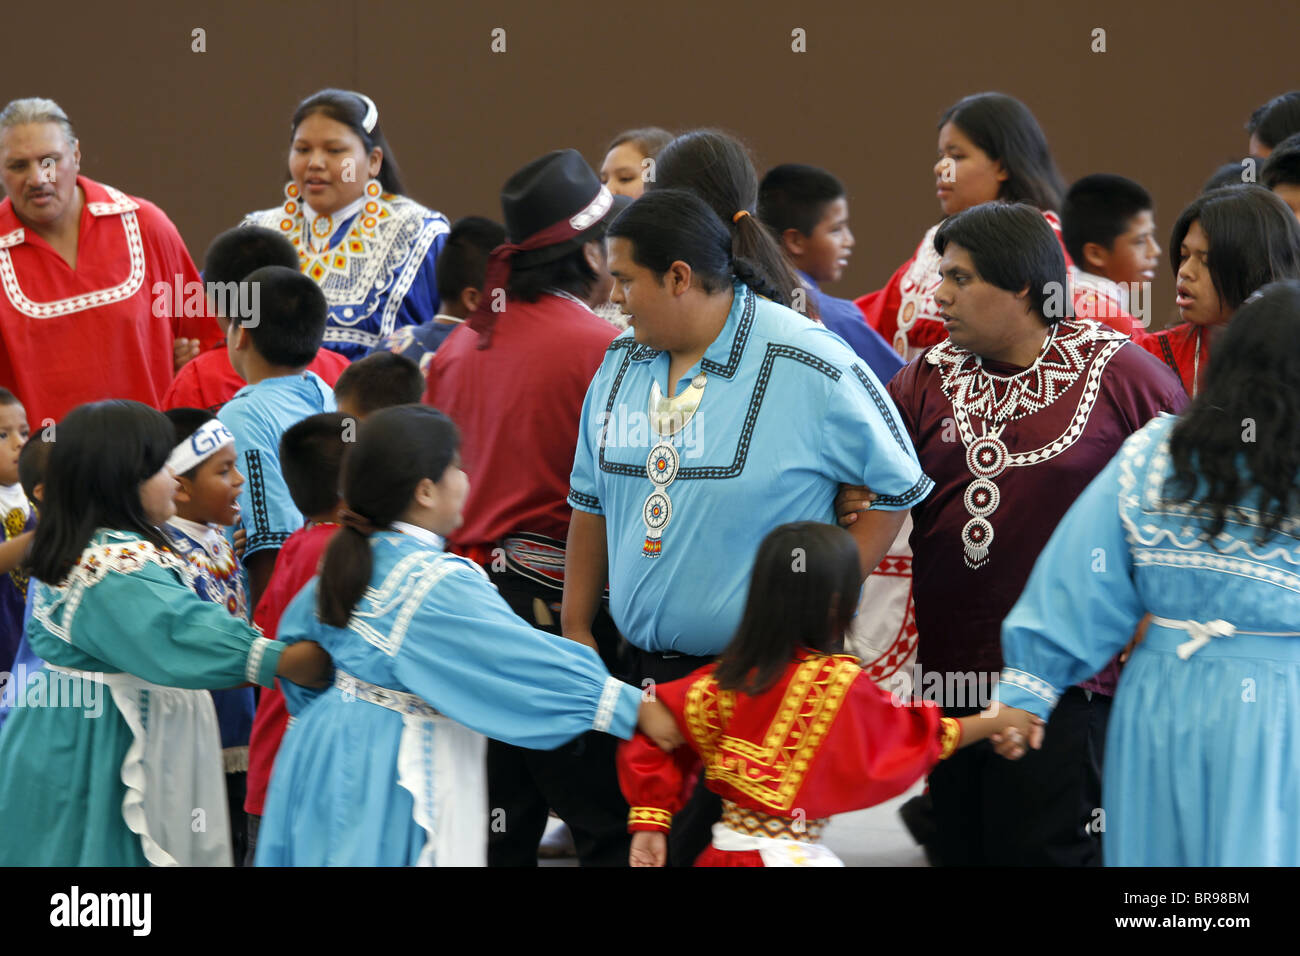 Cherokee, Caroline du Nord - Chactaw Indiens effectuant une danse sociale sur scène lors de l'assemblée annuelle du Festival des tribus. Banque D'Images